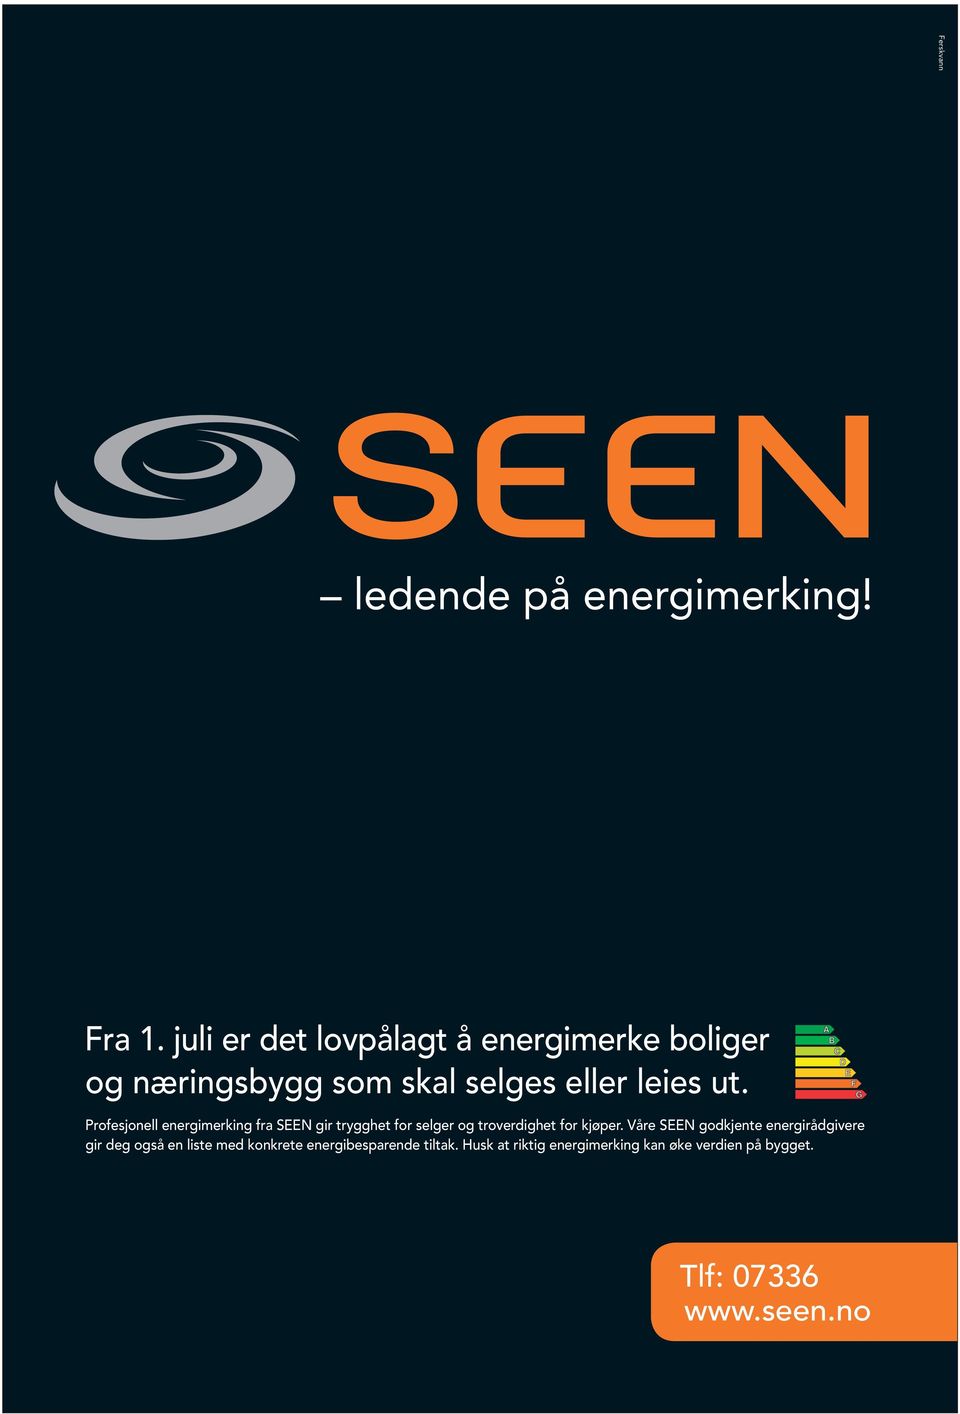 Profesjonell energimerking fra SEEN gir trygghet for selger og troverdighet for kjøper.